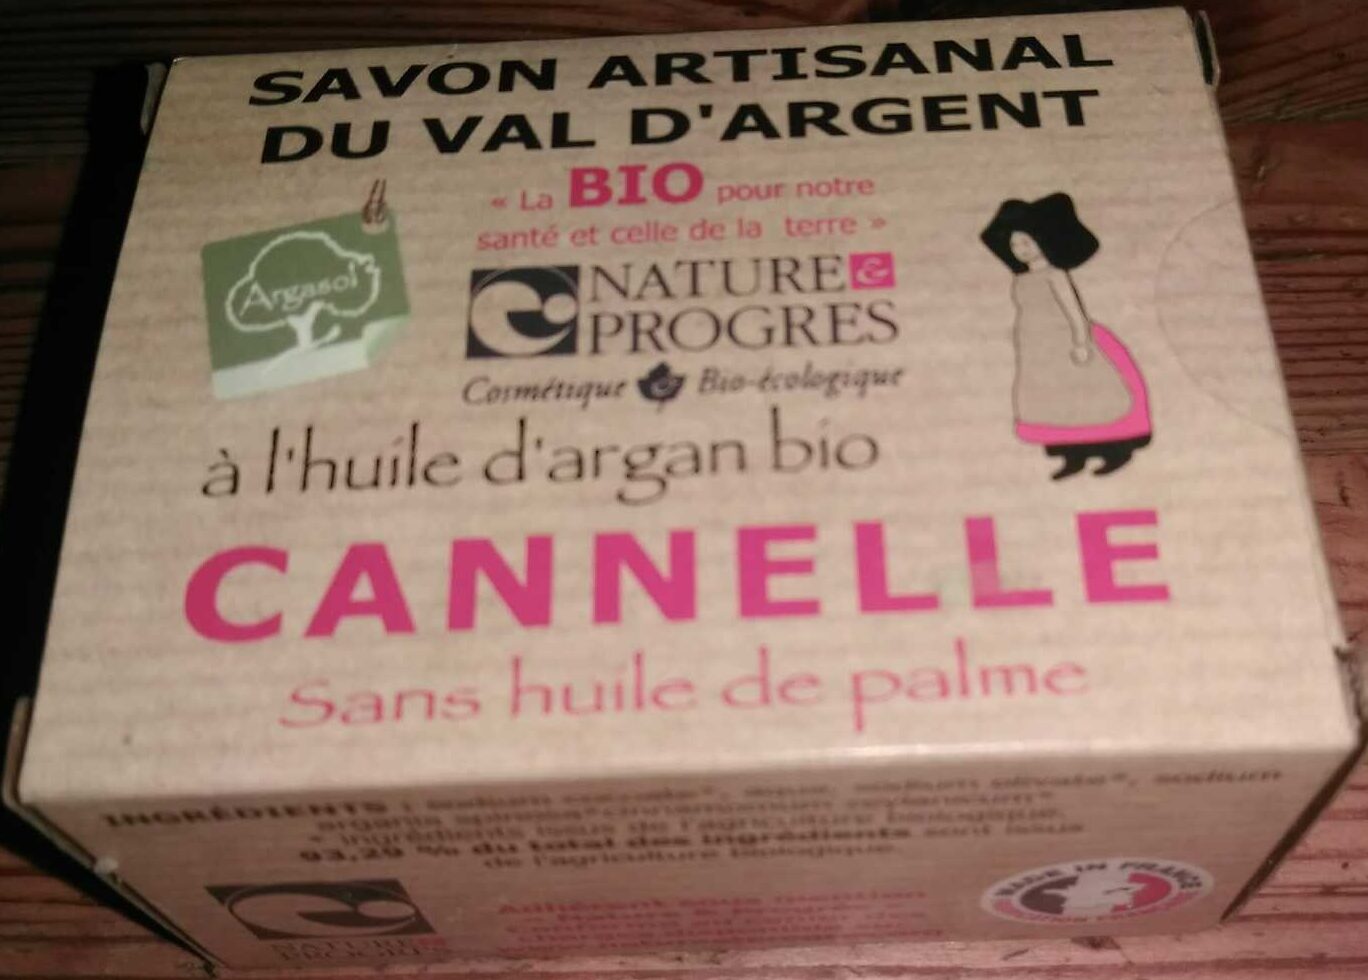 Savon artisanal du Val d'Argent à l'huile d'argan bio - Cannelle - Produto - fr